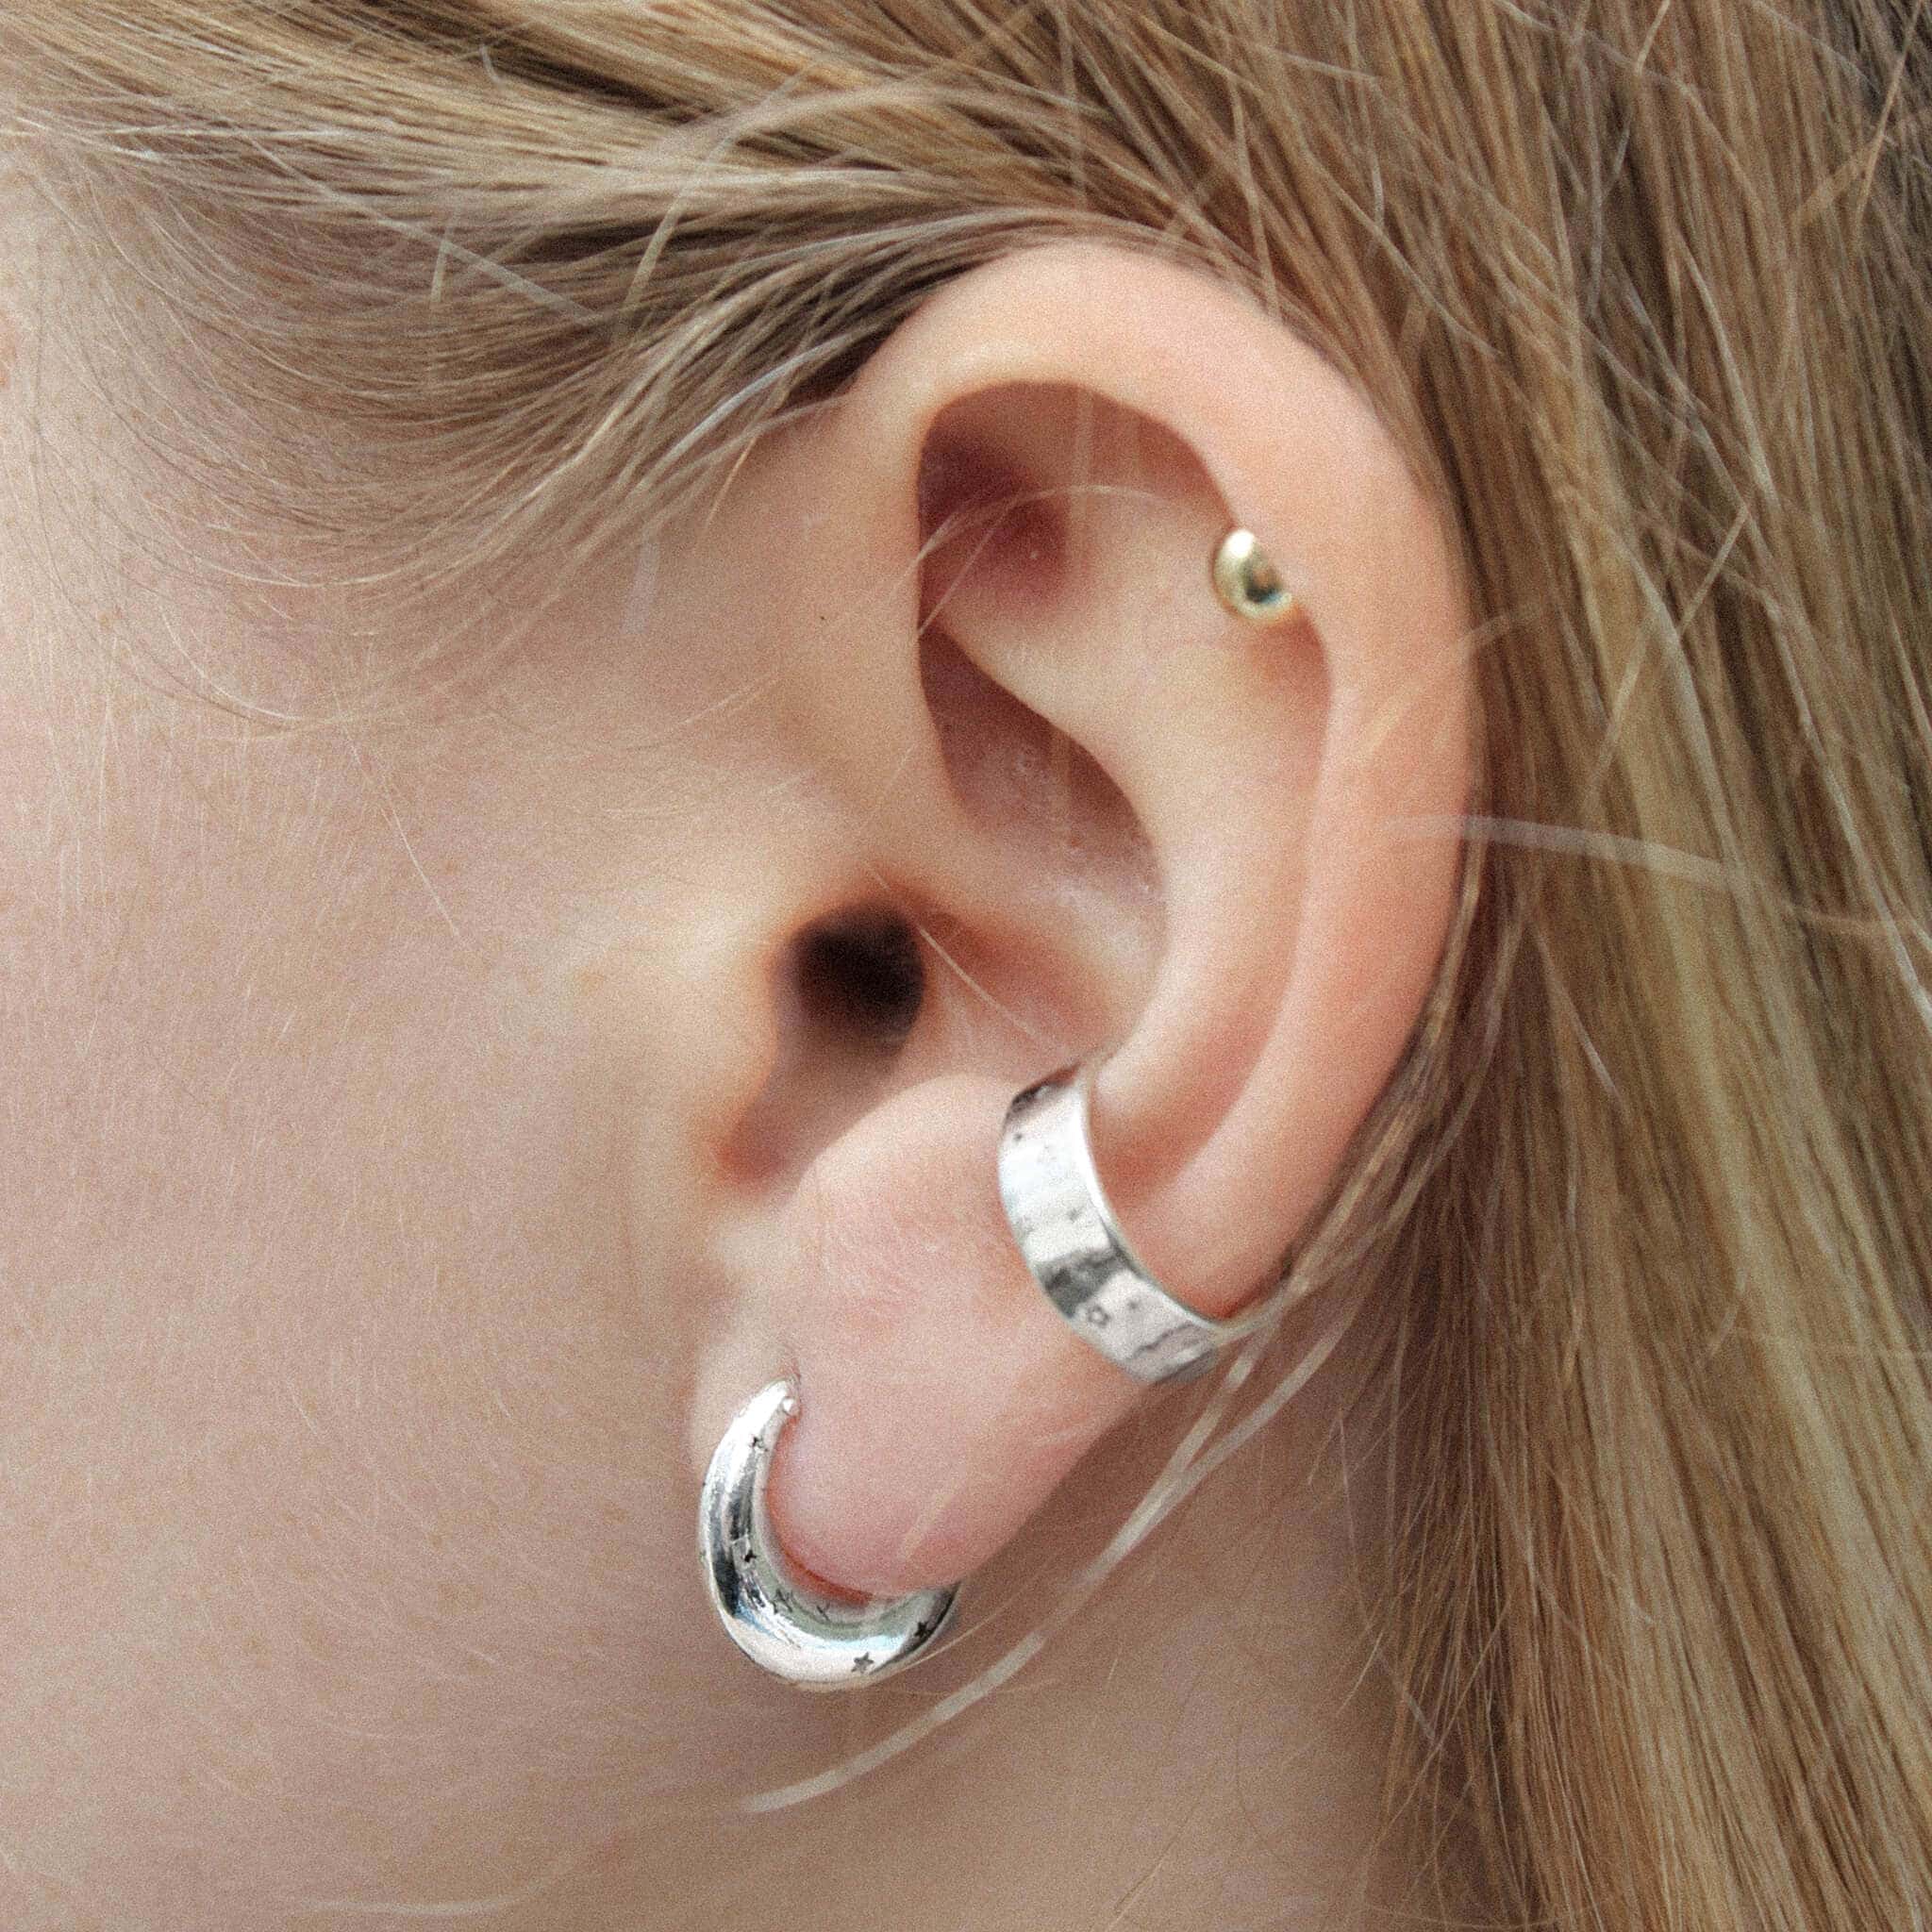 Silver star earrings and silver ear cuff on a model ear.